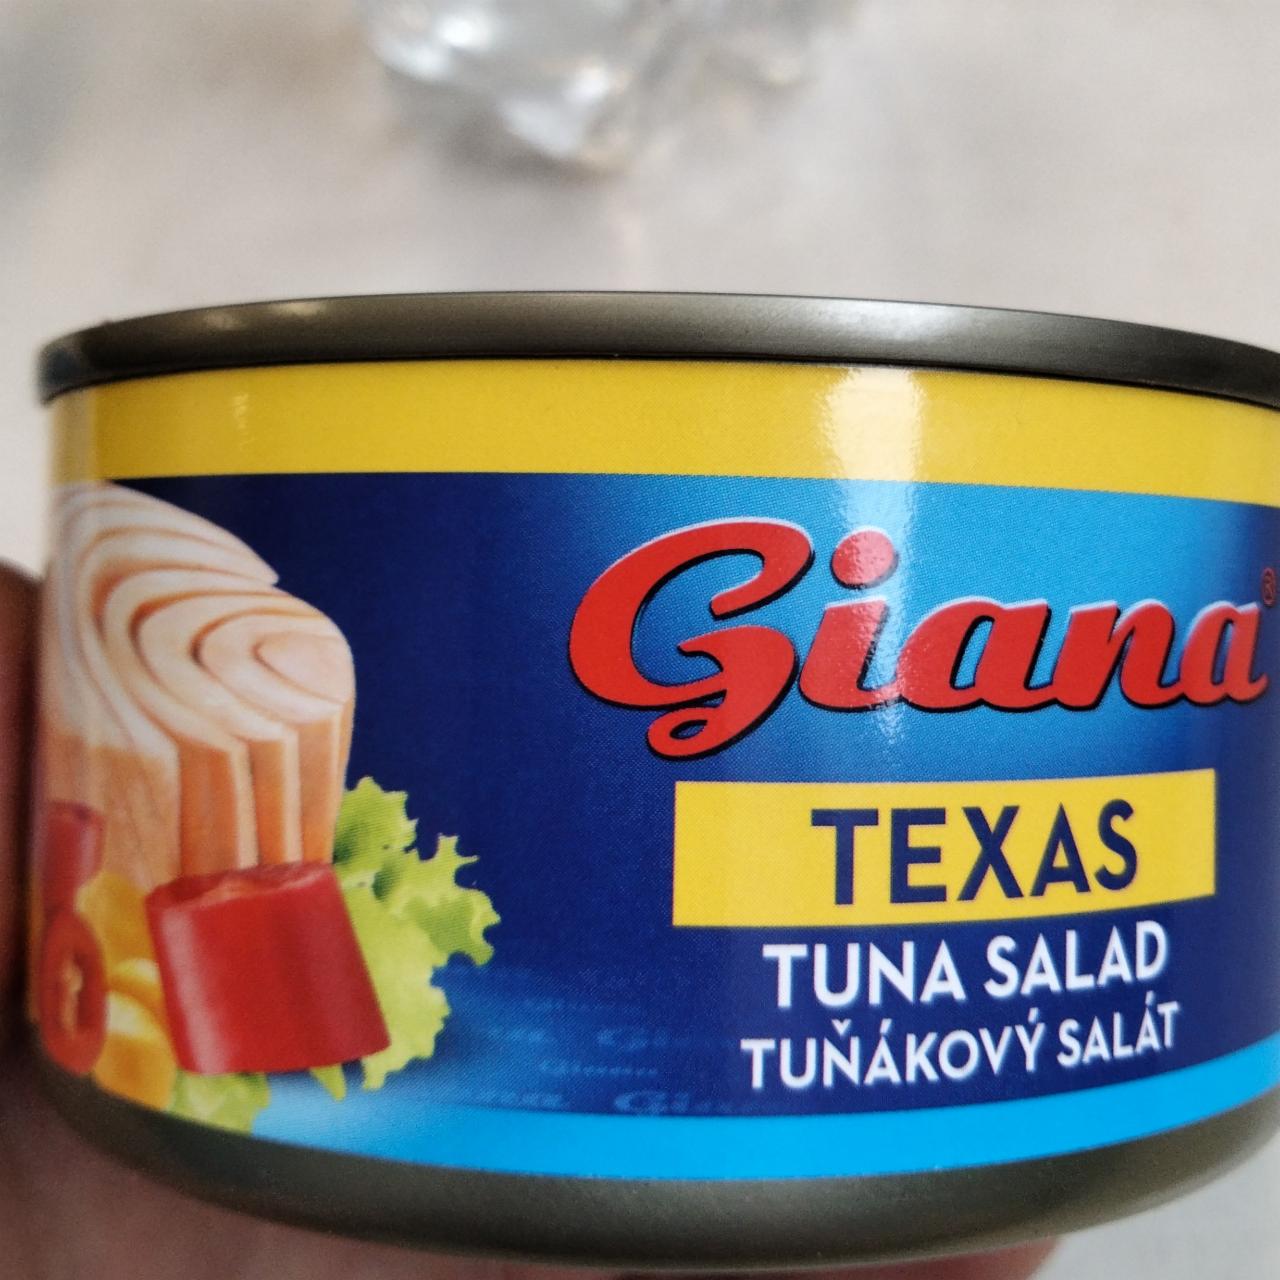 Fotografie - Tuňákový salát Texas Giana